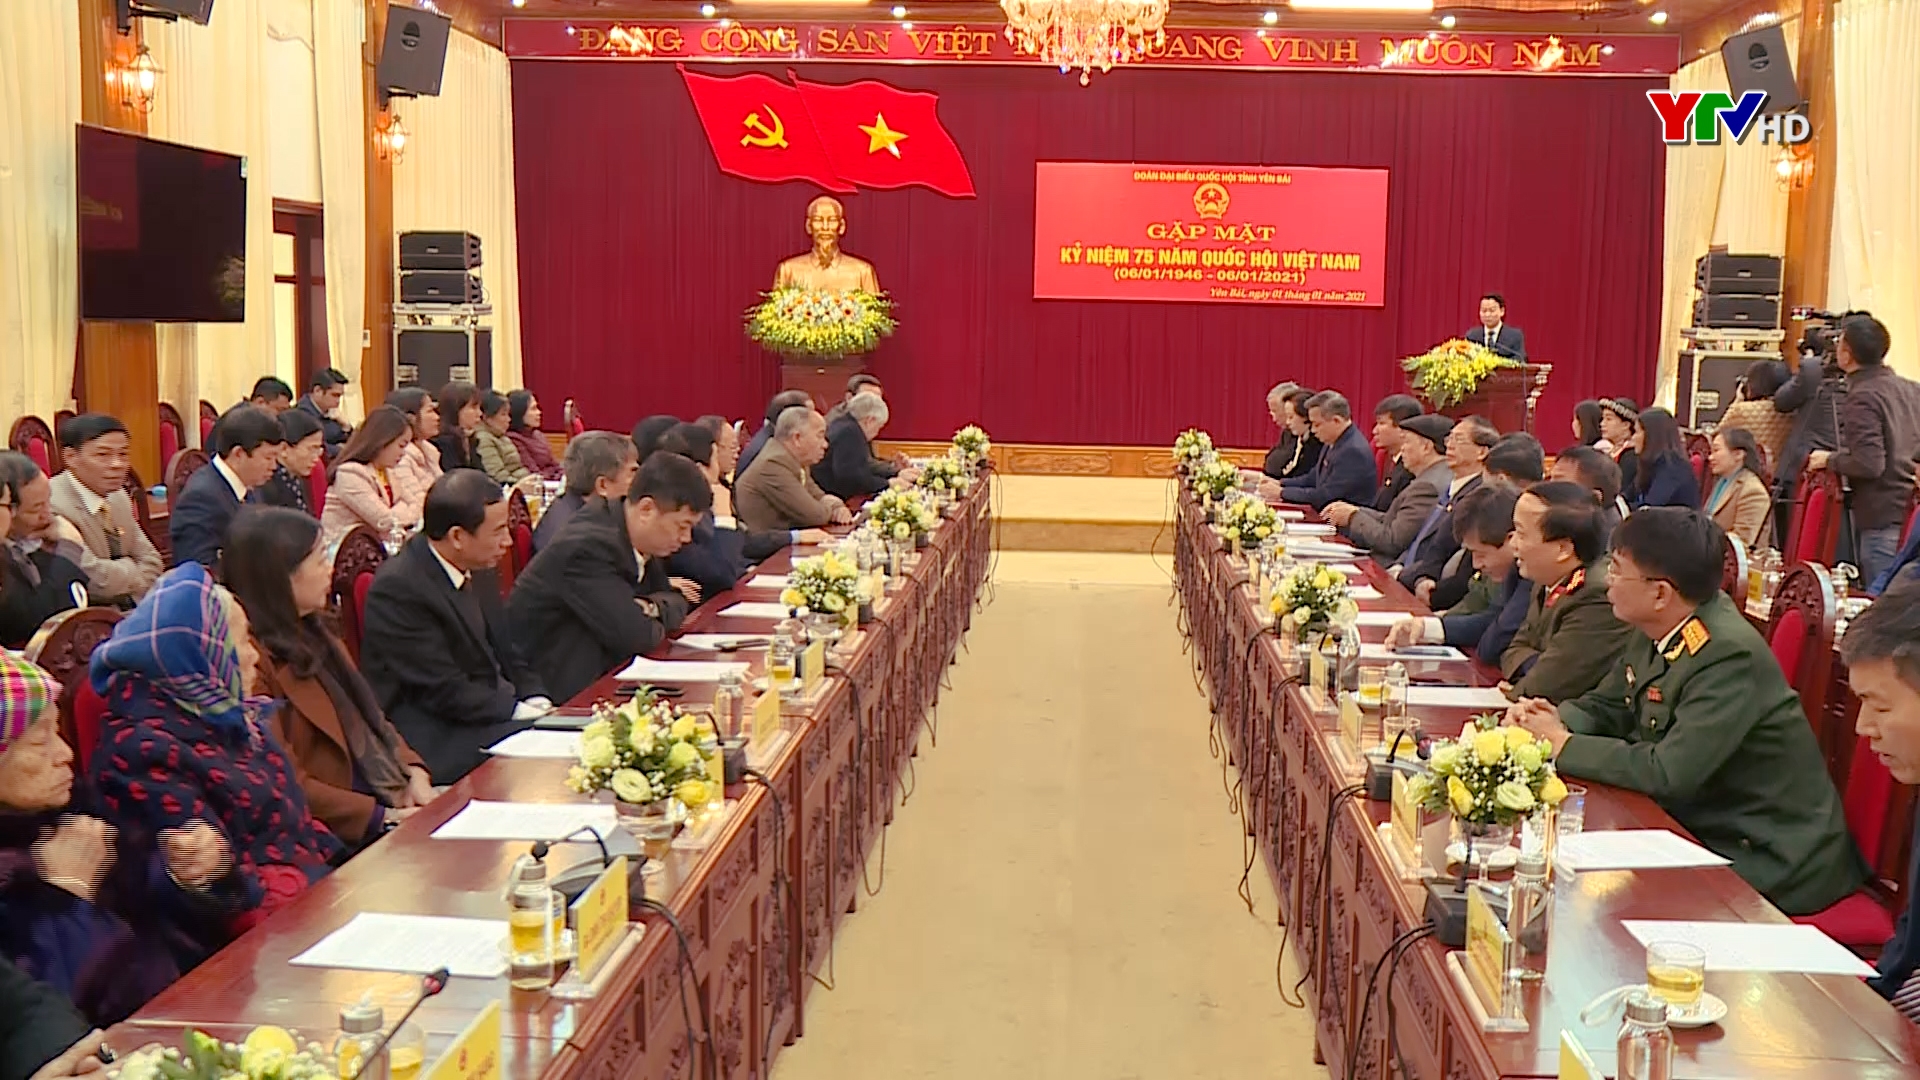 Phát biểu của đồng chí Bí thư Tỉnh ủy Đỗ Đức Duy tại buổi gặp mặt kỷ niệm 75 năm Quốc hội Việt Nam